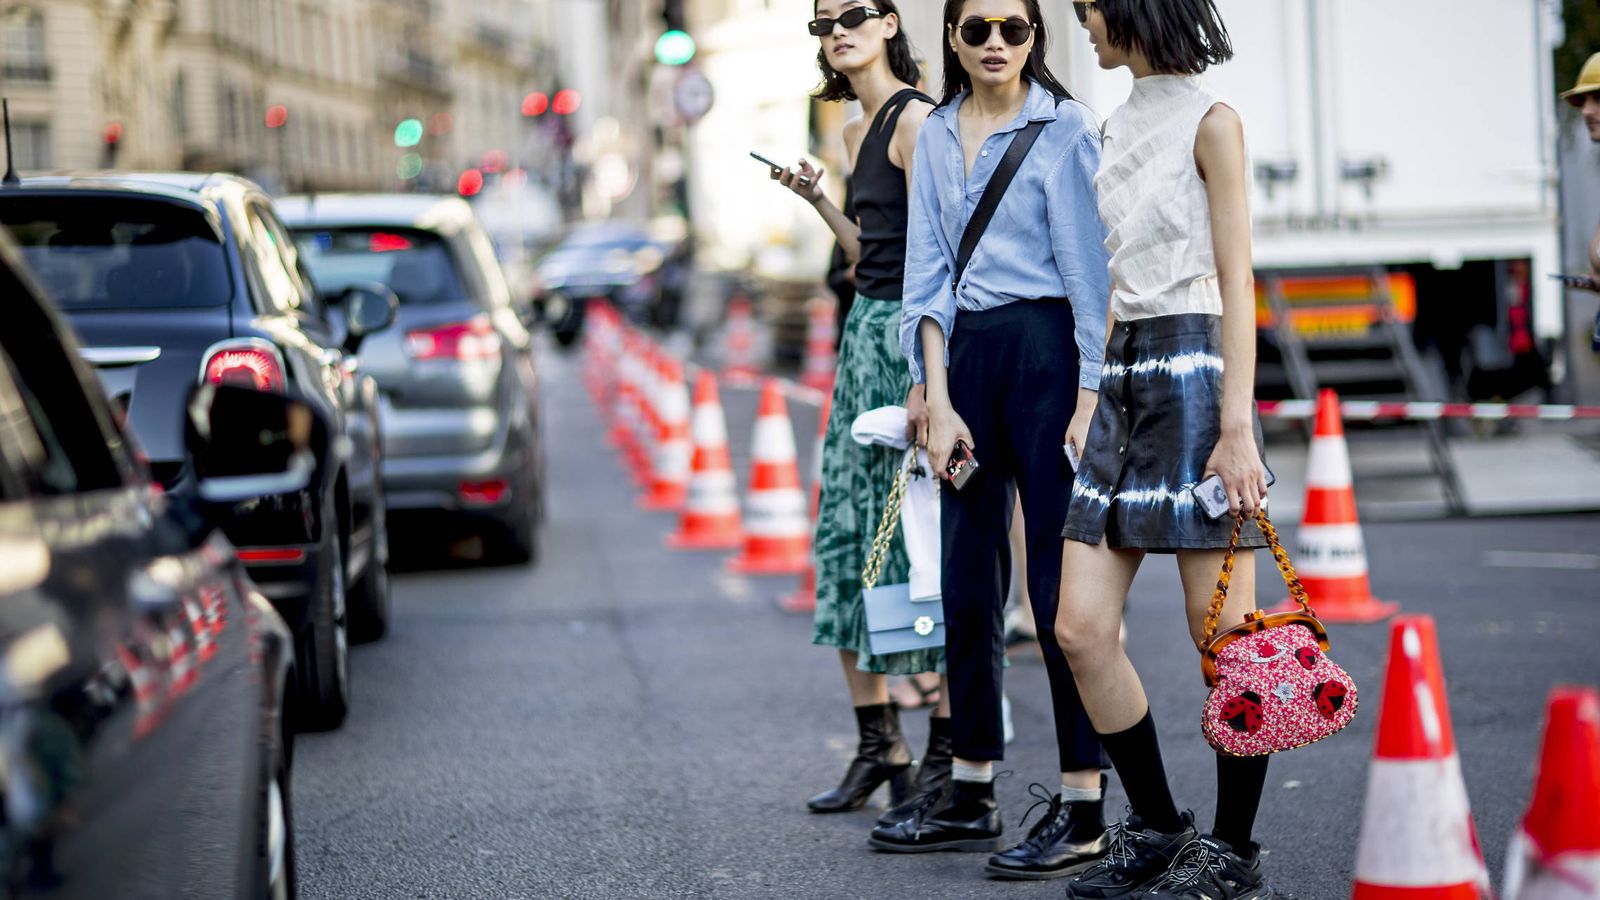 Foto: Sé diferente, apuesta por bolsos originales. Street style de la Semana de la Alta Costura de París. (Imaxtree)